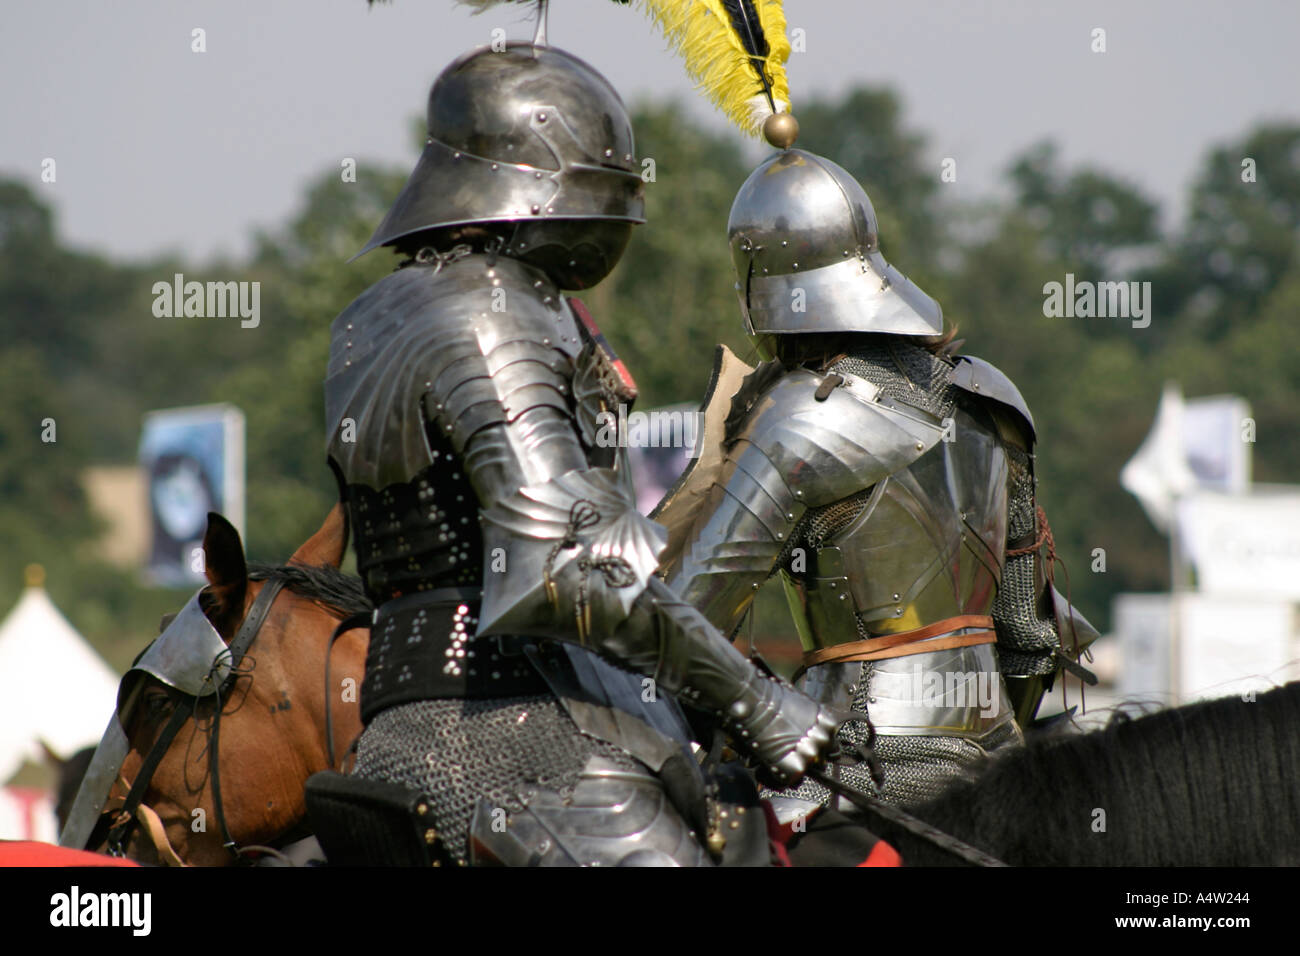 Der schwarze Ritter mittelalterliche Ritterspiele Anzeige Stockfoto